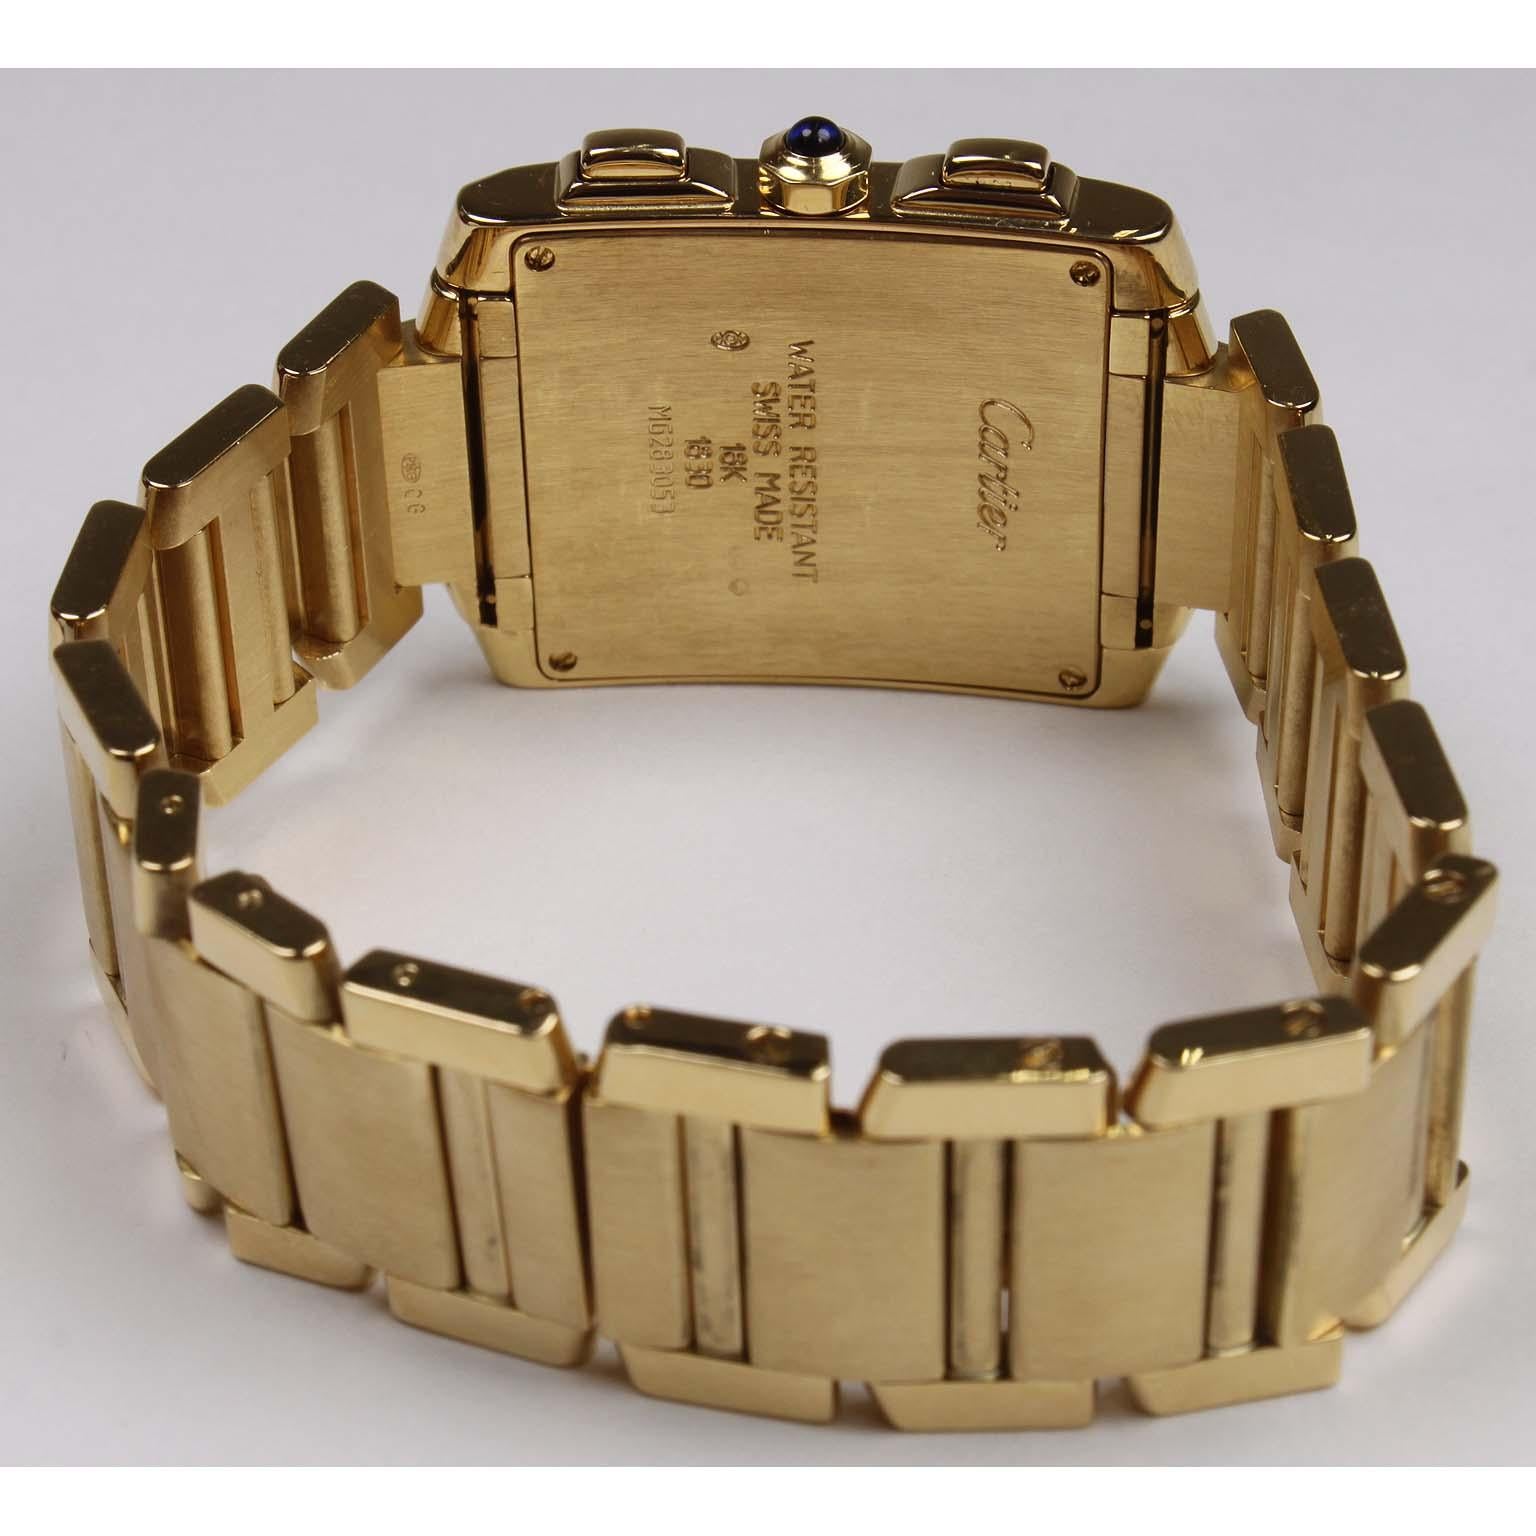 Cast Cartier Yellow Gold Tank Francaise Chronograph Quartz Wristwatch